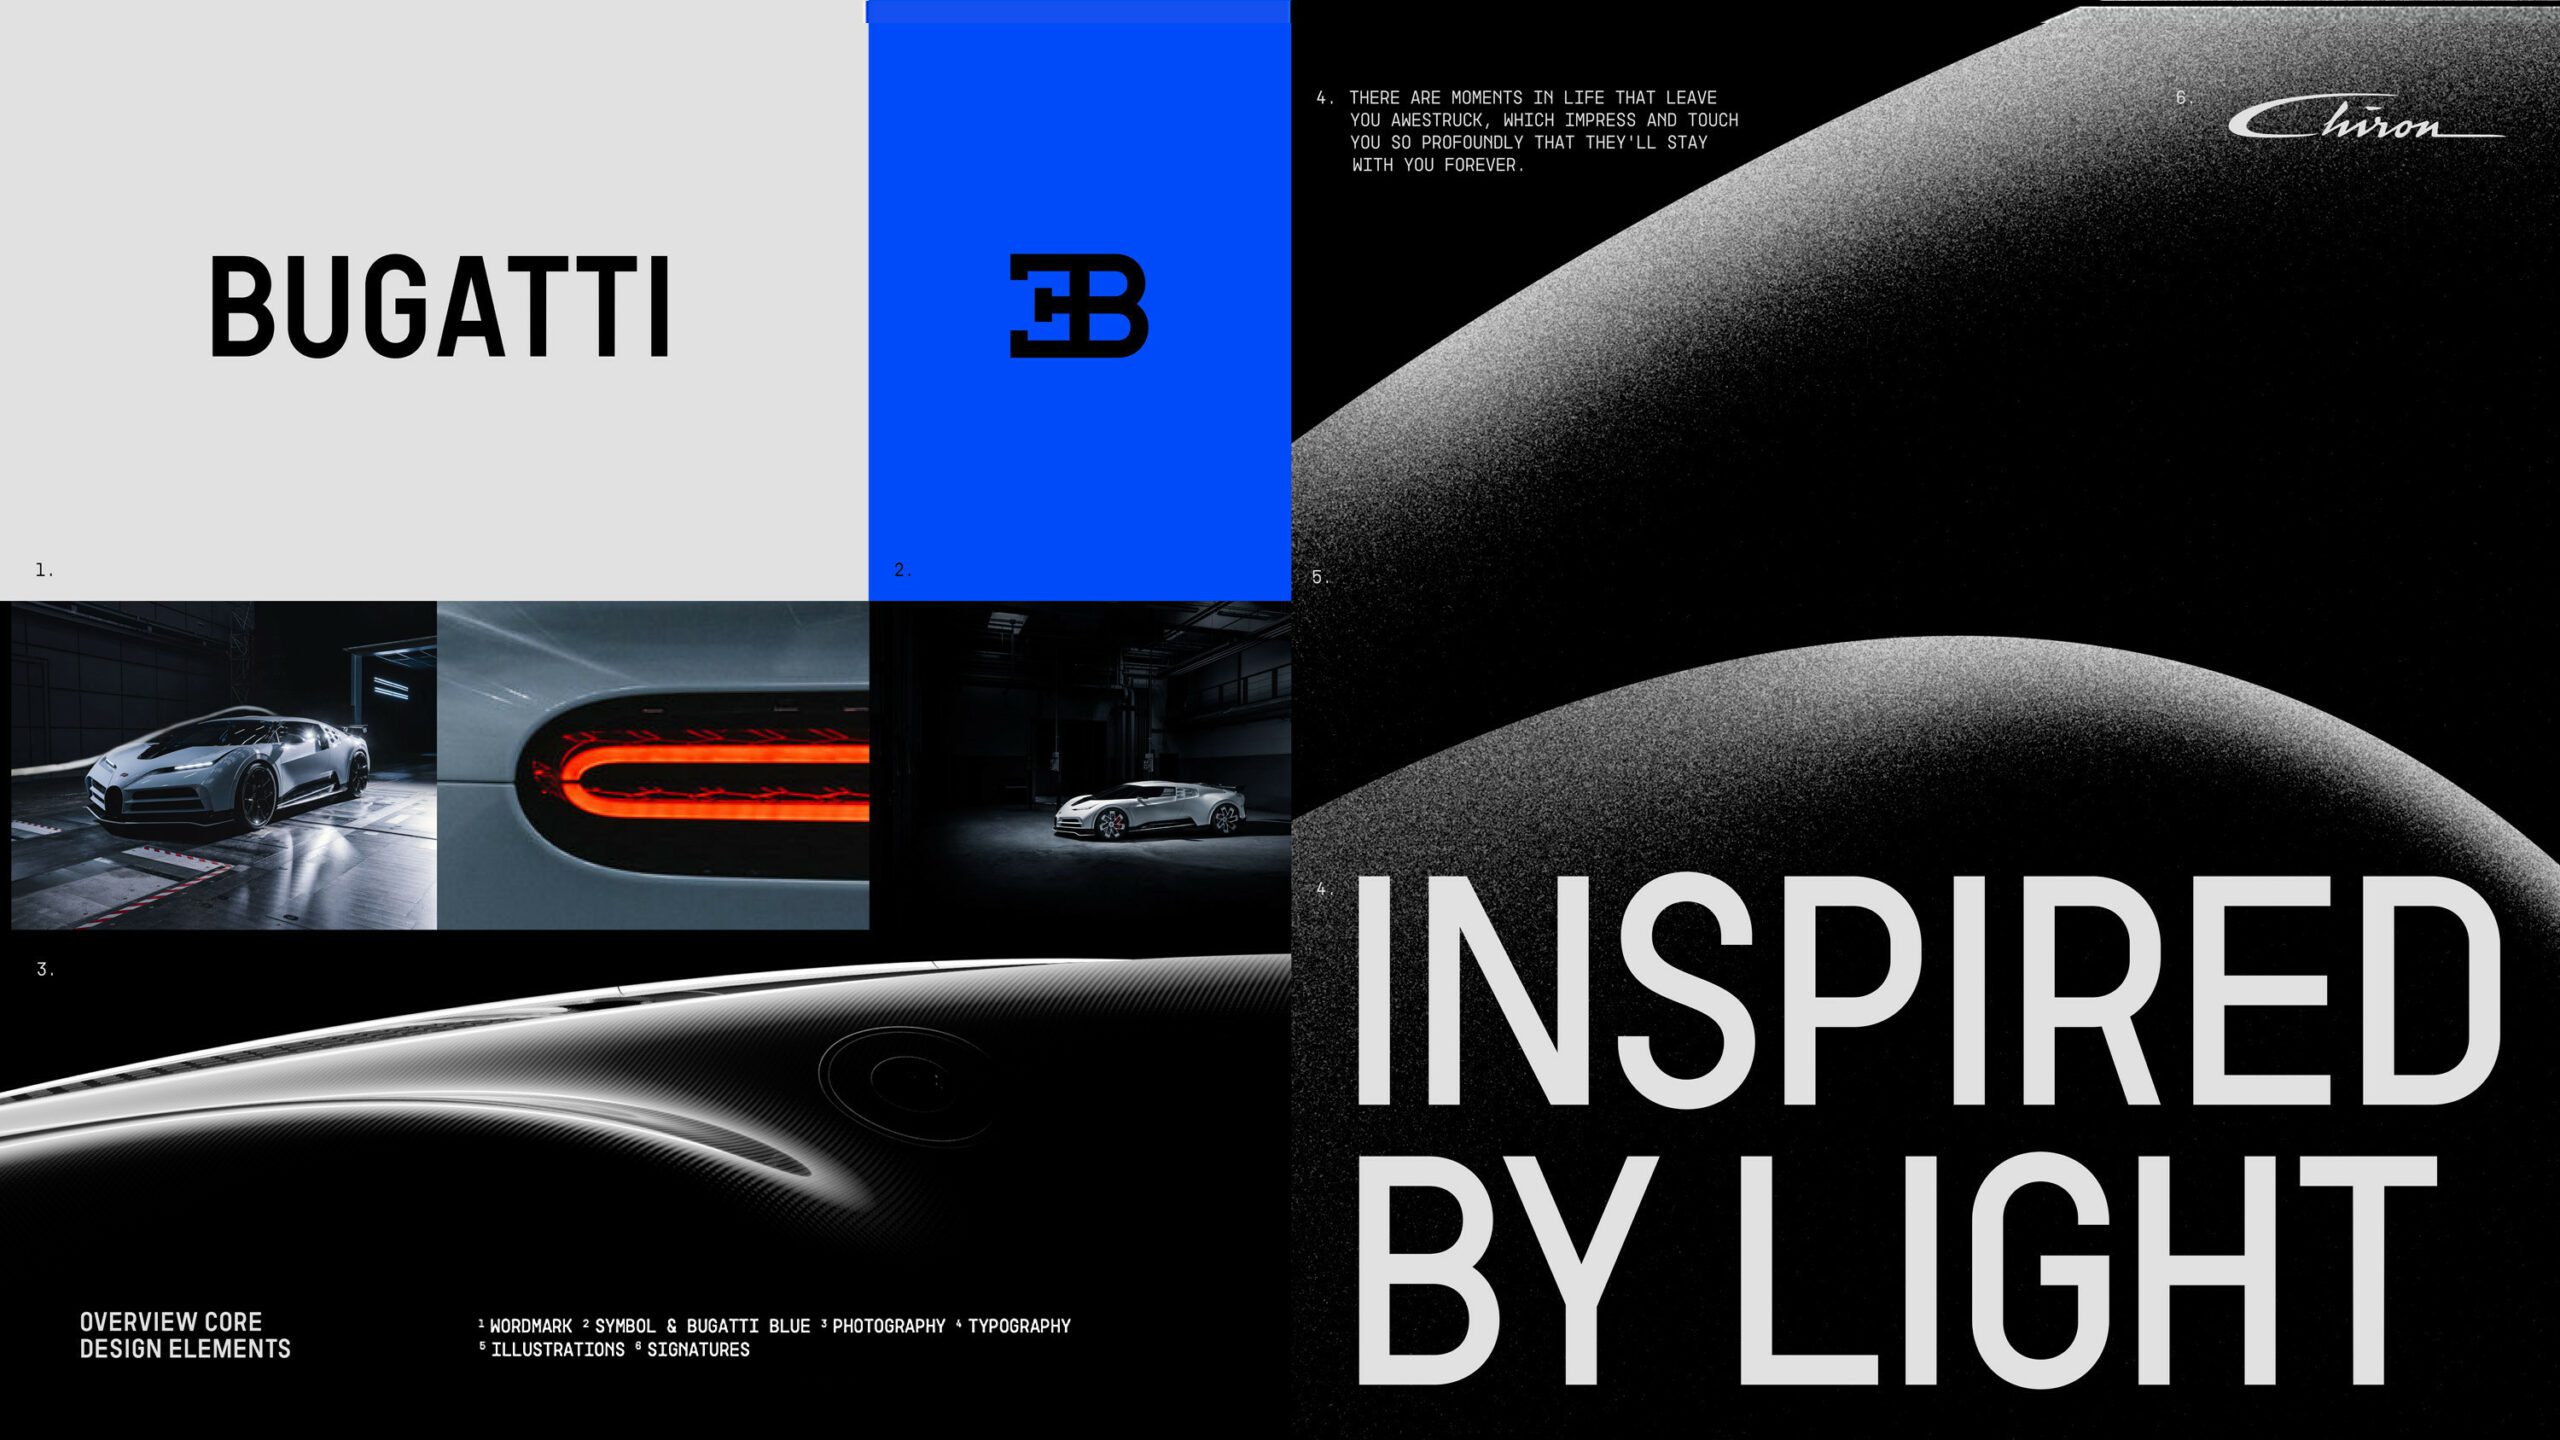 Bugatti's new brand identity and colours